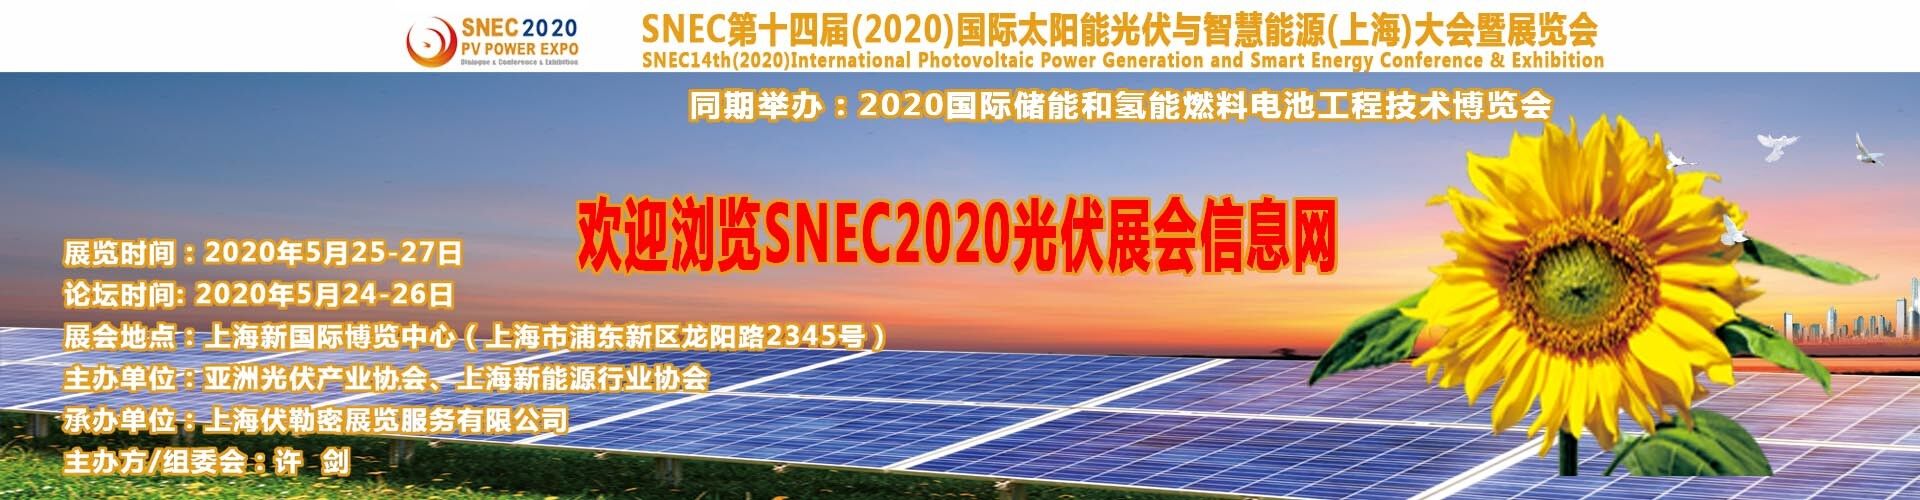 中國上海5月份太陽能展覽會